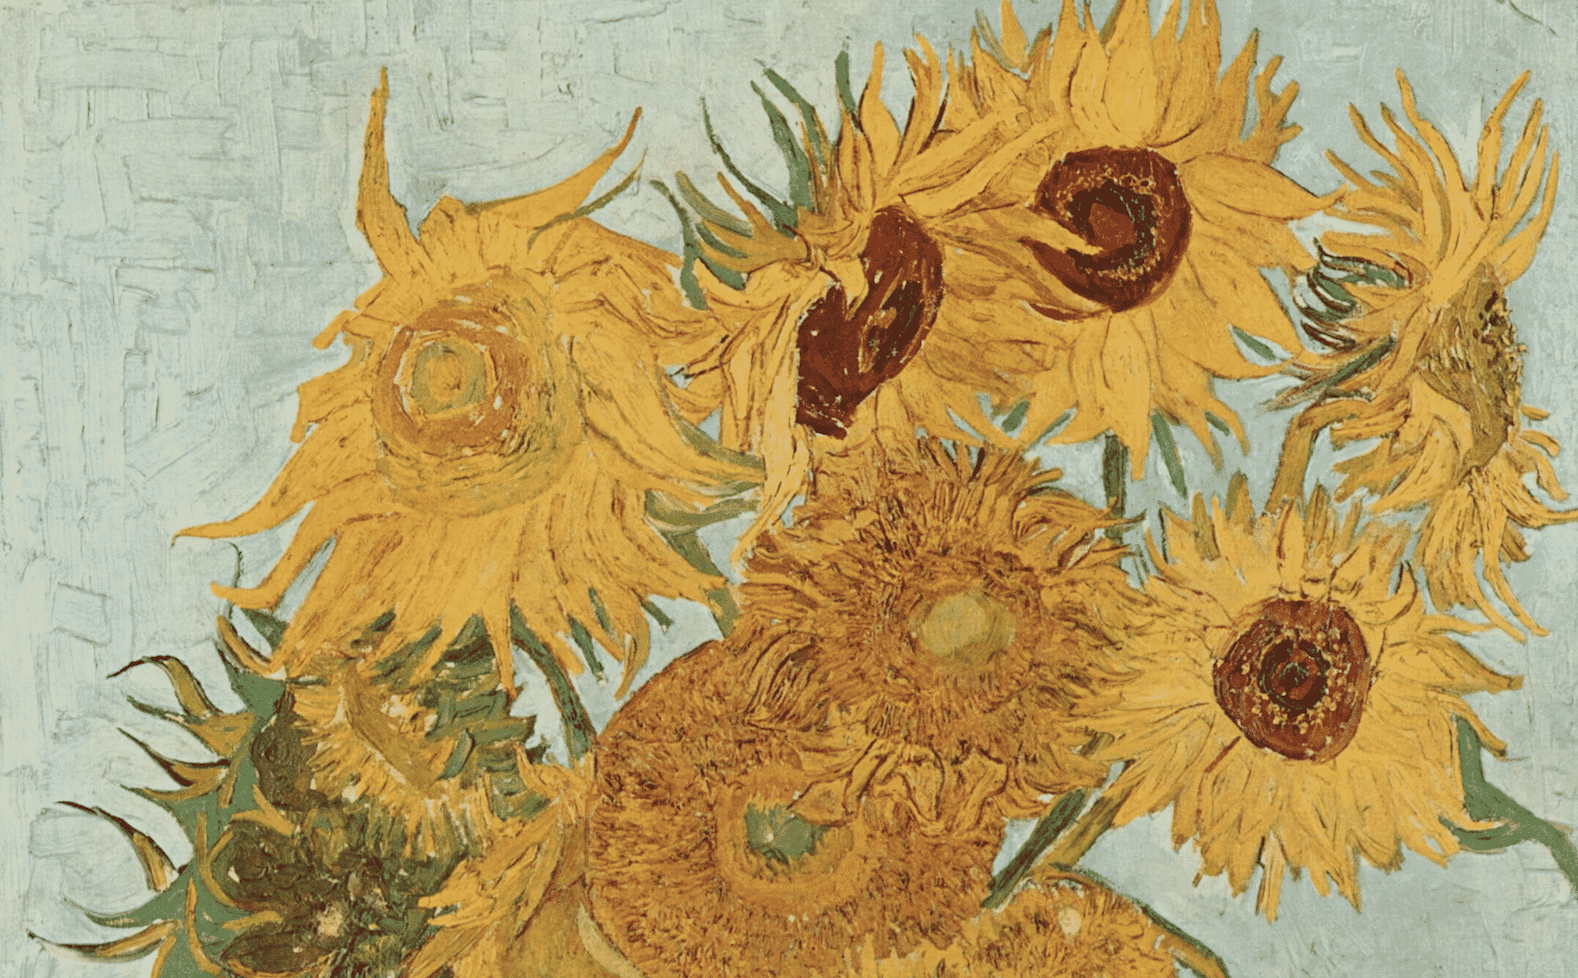 Ecologistas británicos vandalizan pintura ‘Los Girasoles’ de Van Gogh